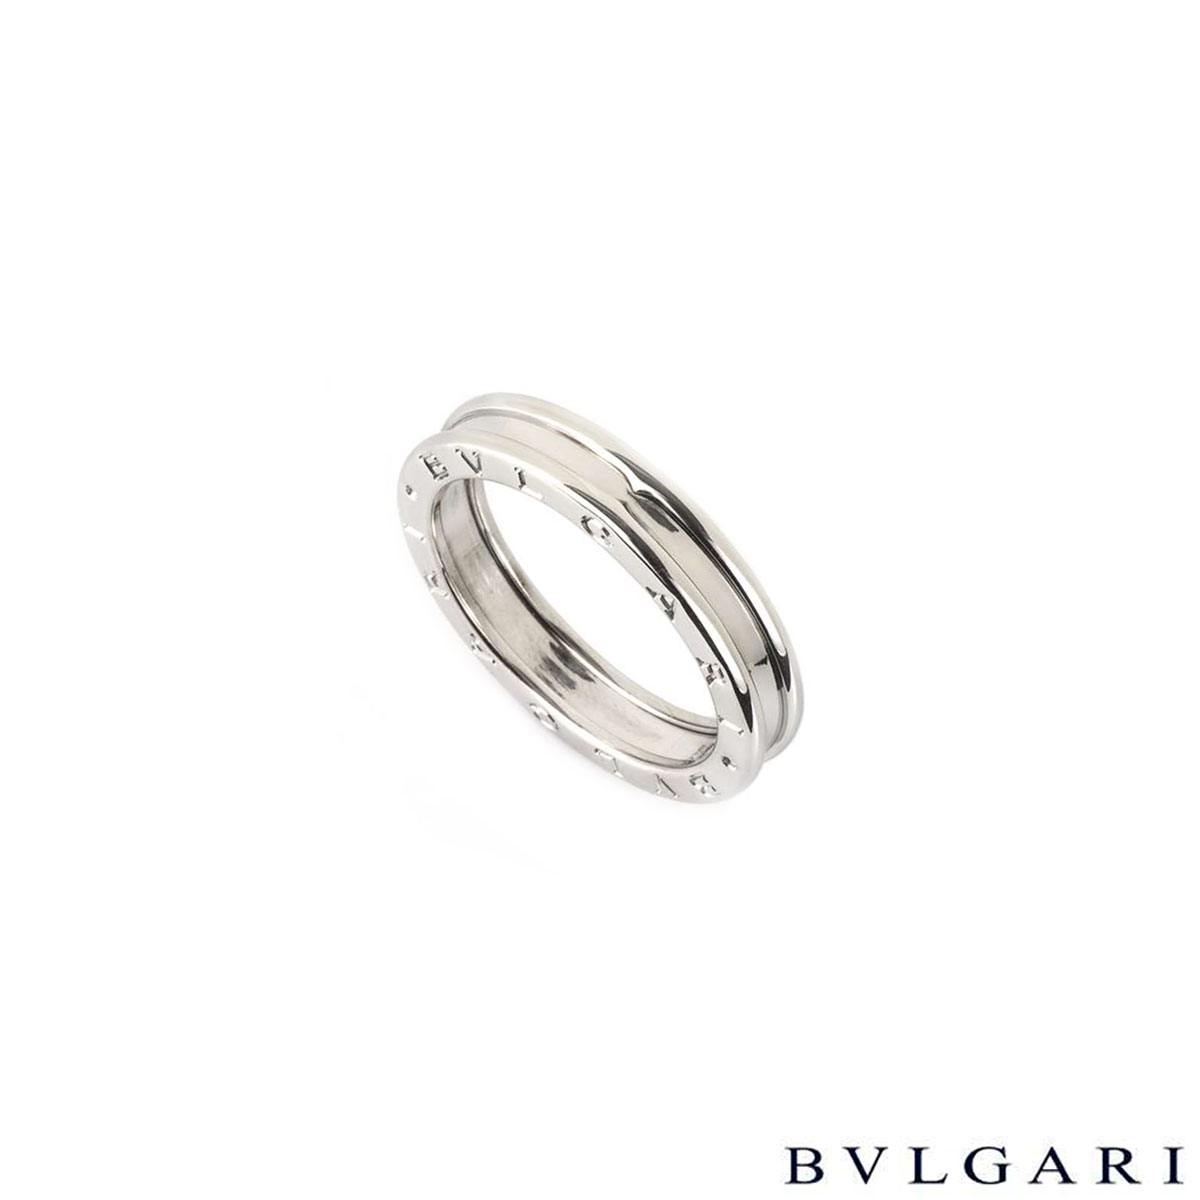 price for bvlgari ring